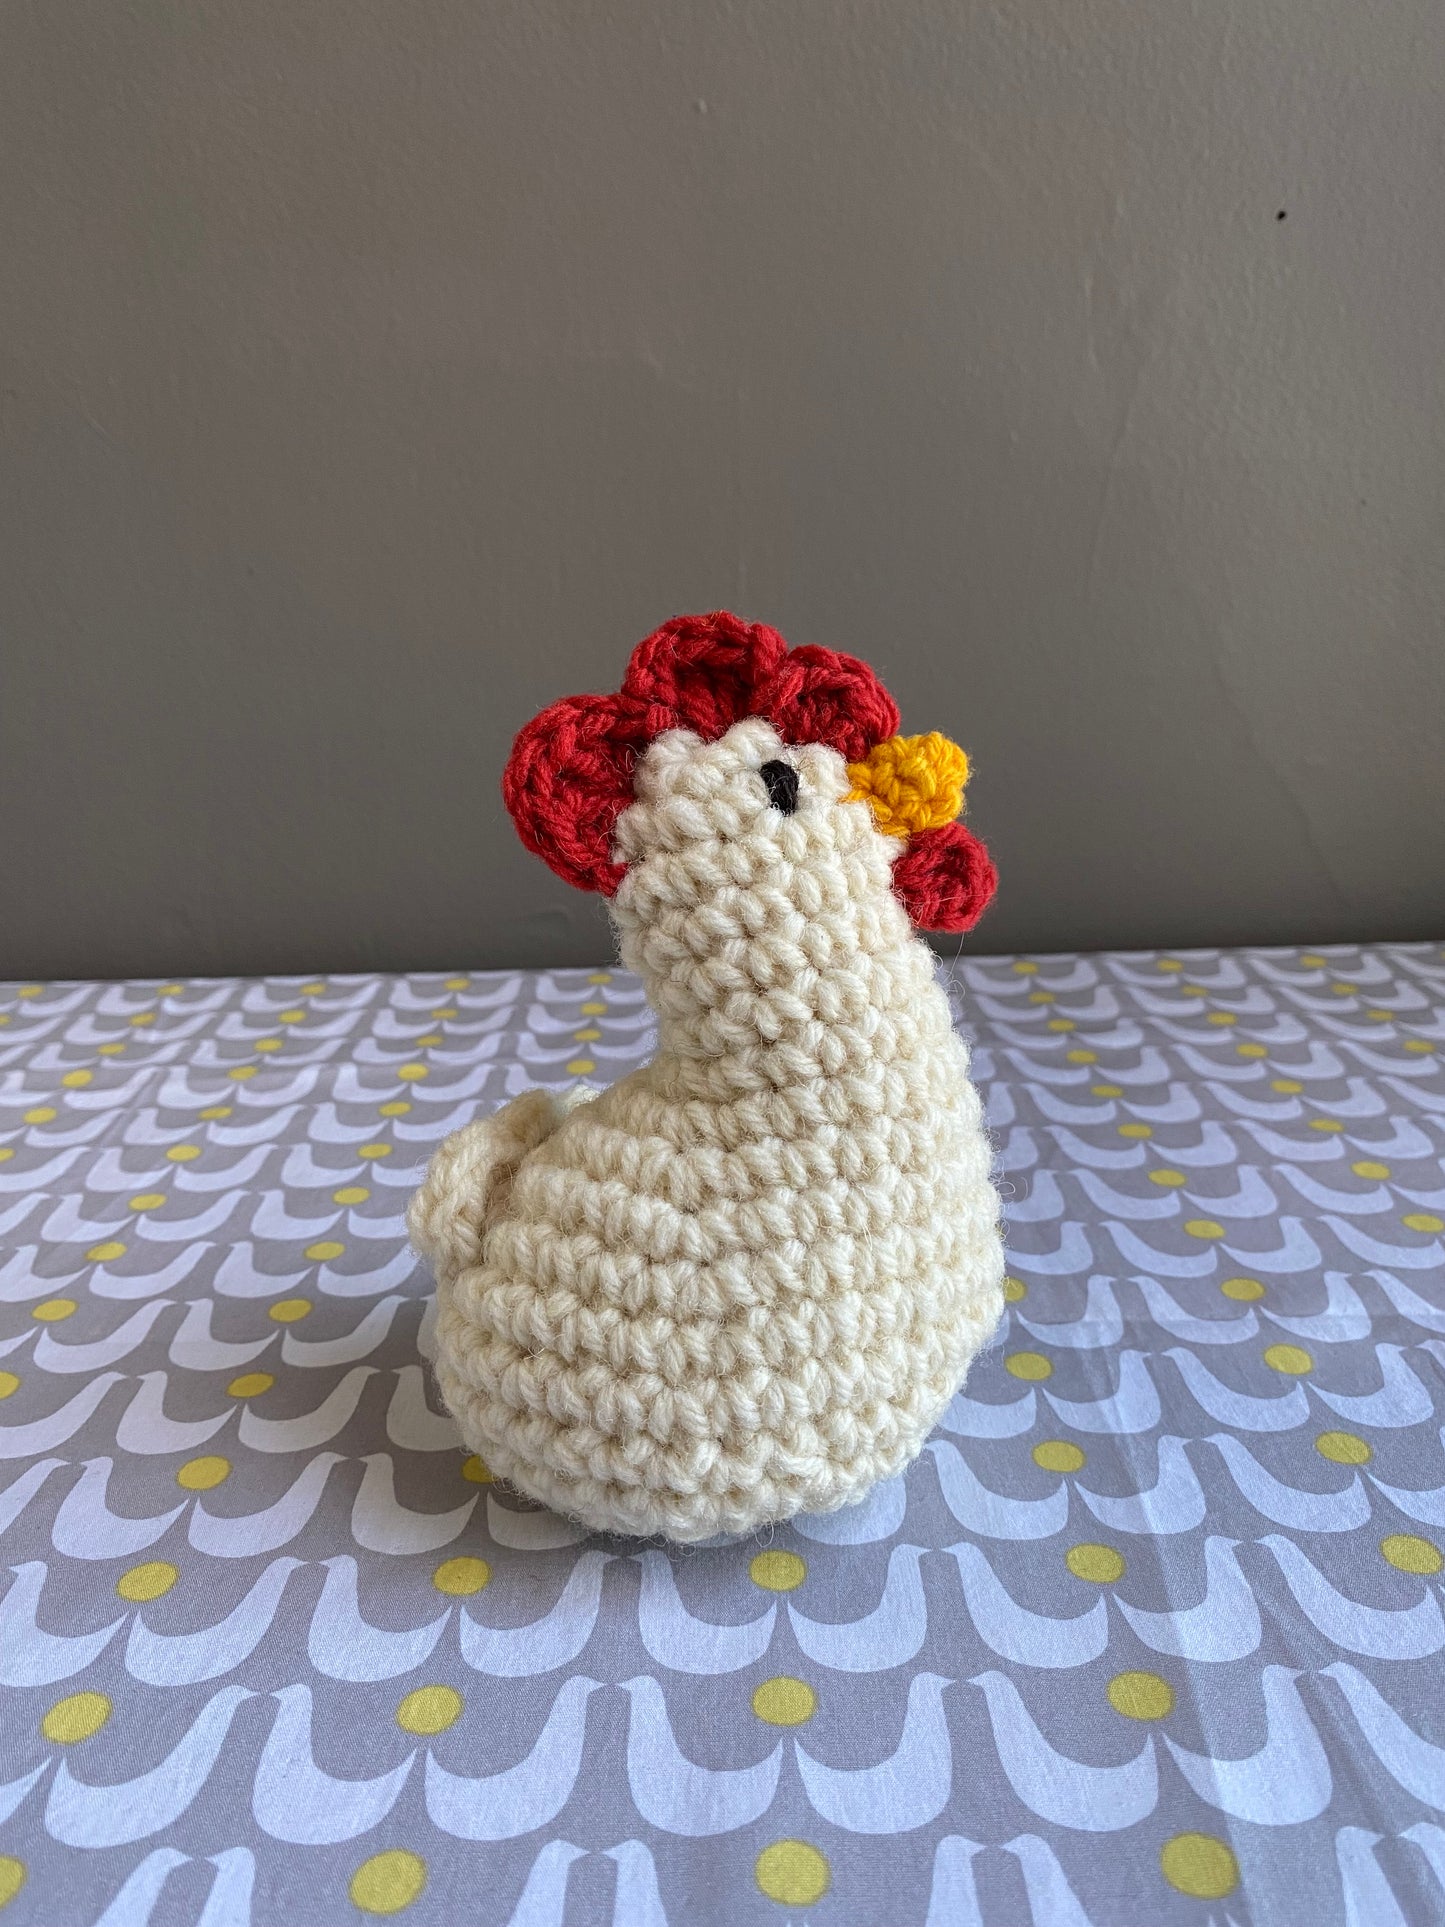 Canadian Wool Chicken Crochet Kit